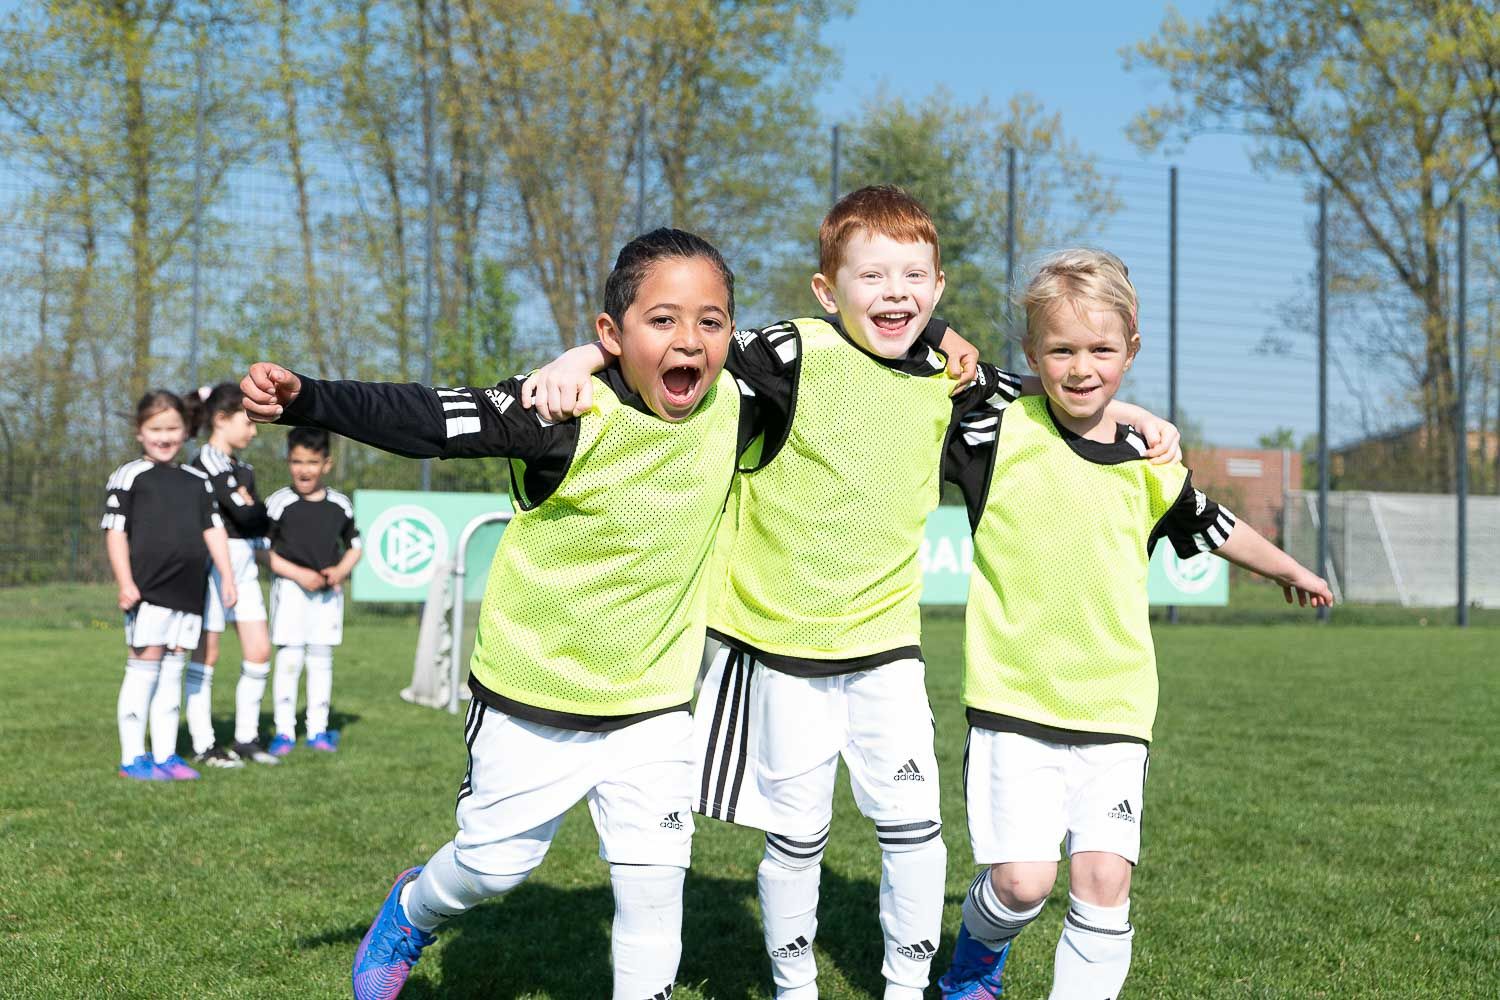 Kinderfußball-Tour von DFB und Volkswagen zu Gast in Emden